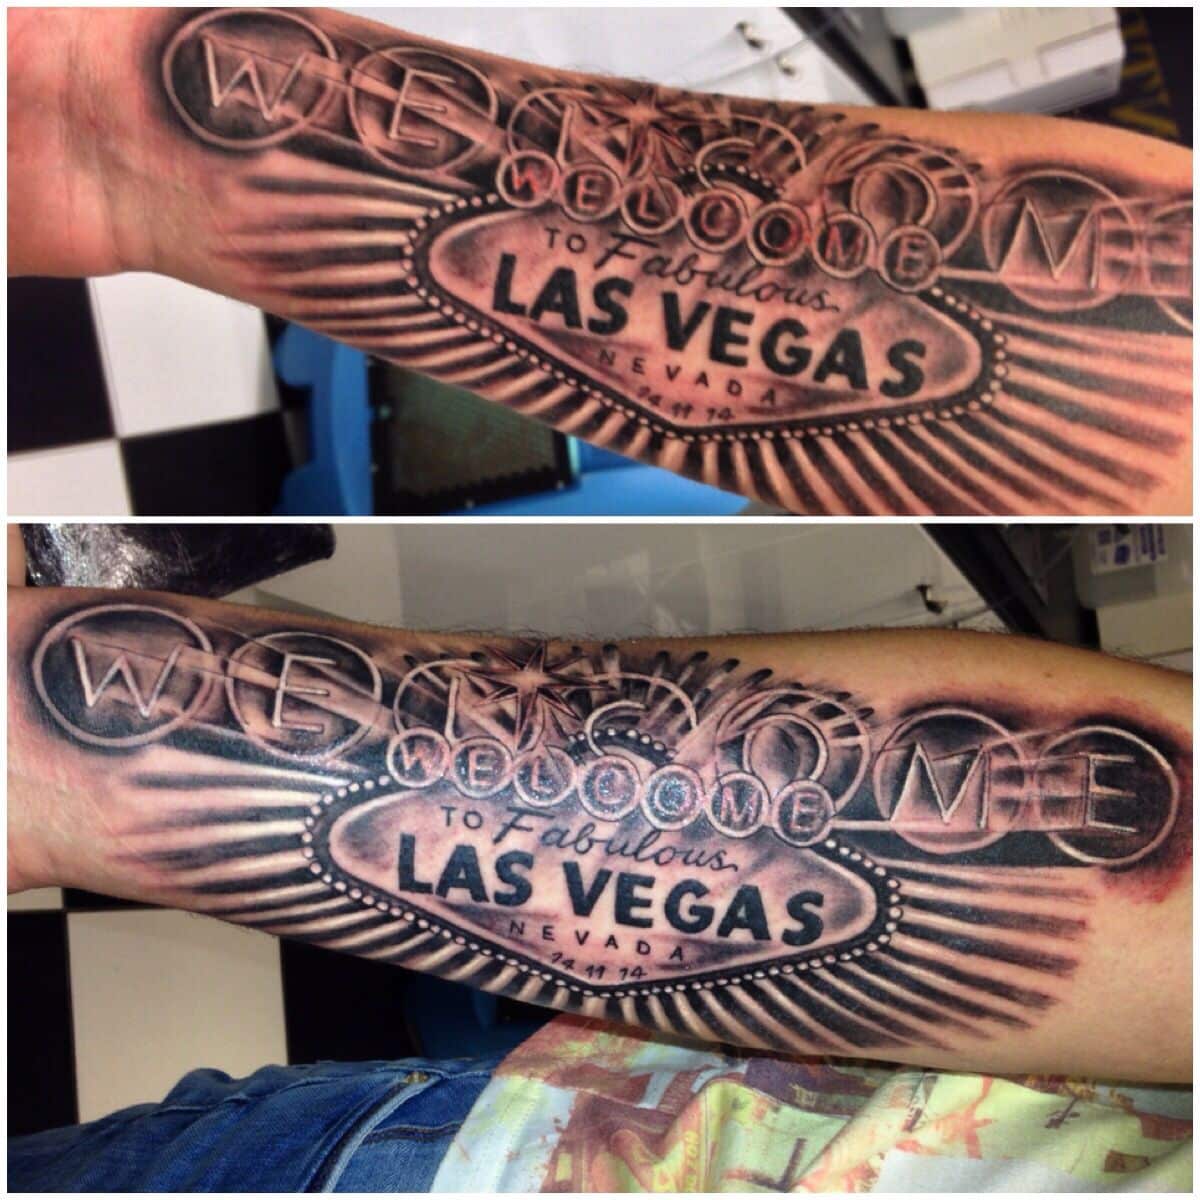 Viva Las Vegas tattoo, I did last year. Dan